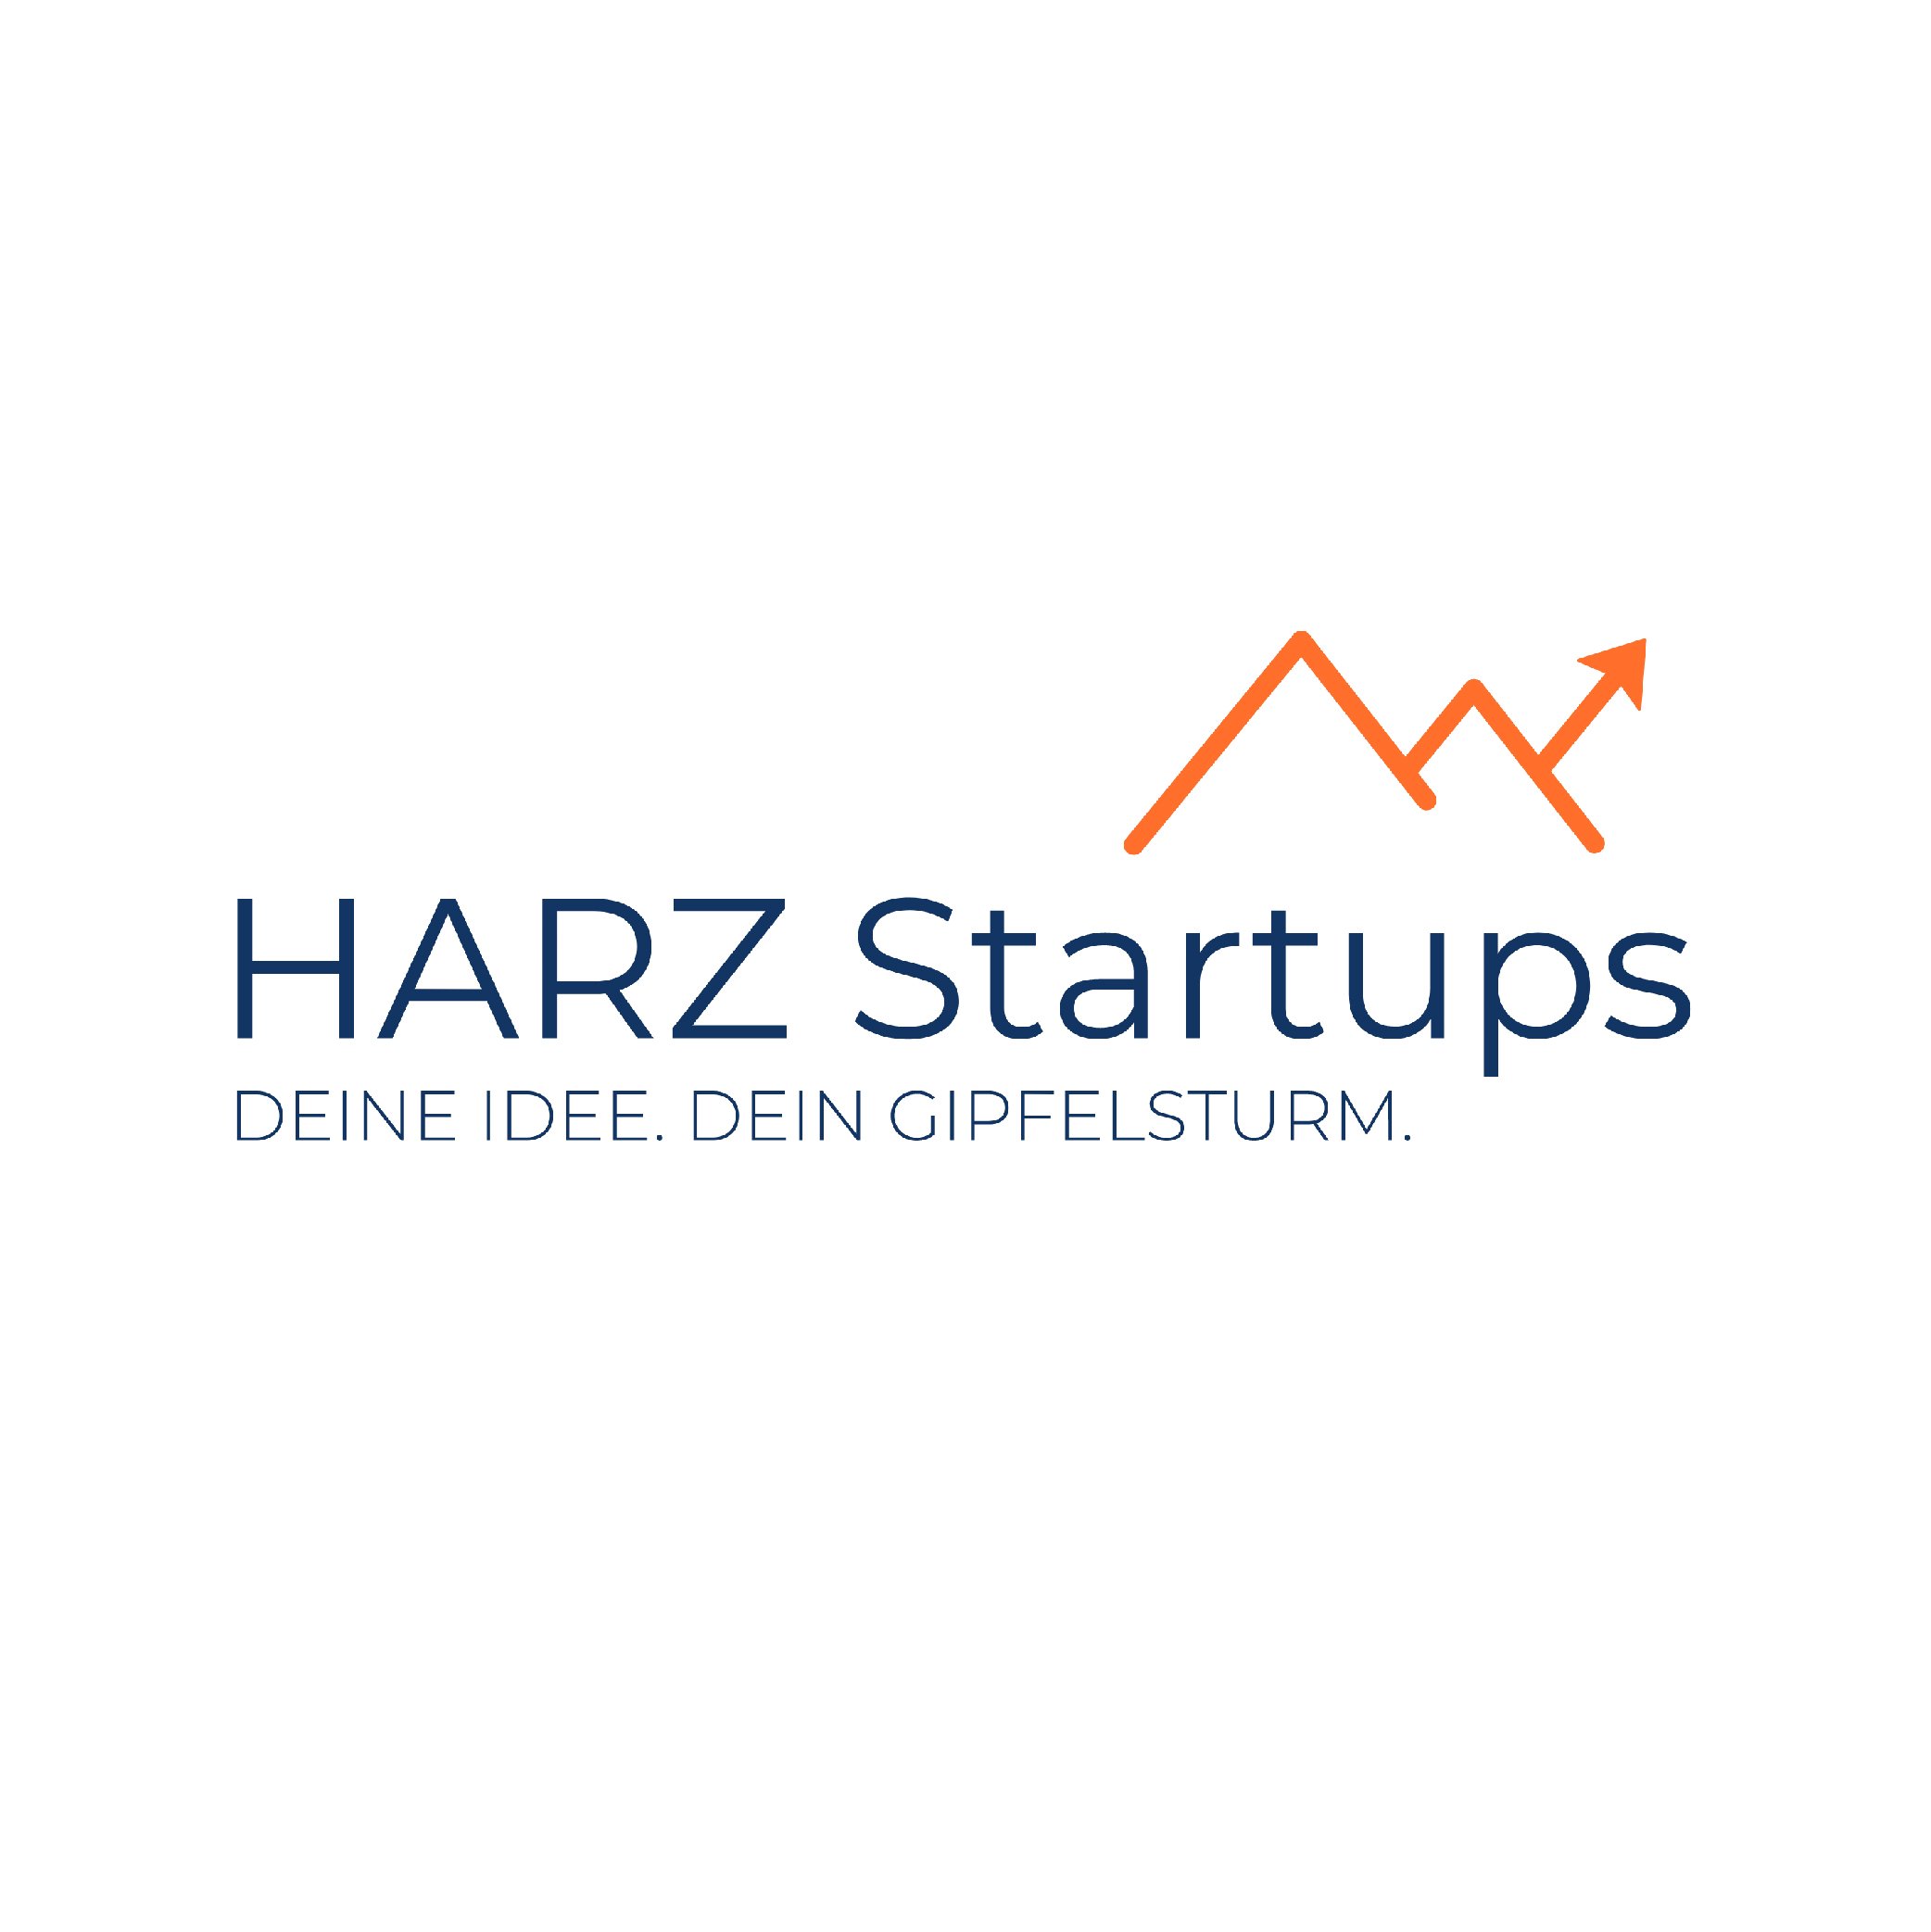 Harz Startups